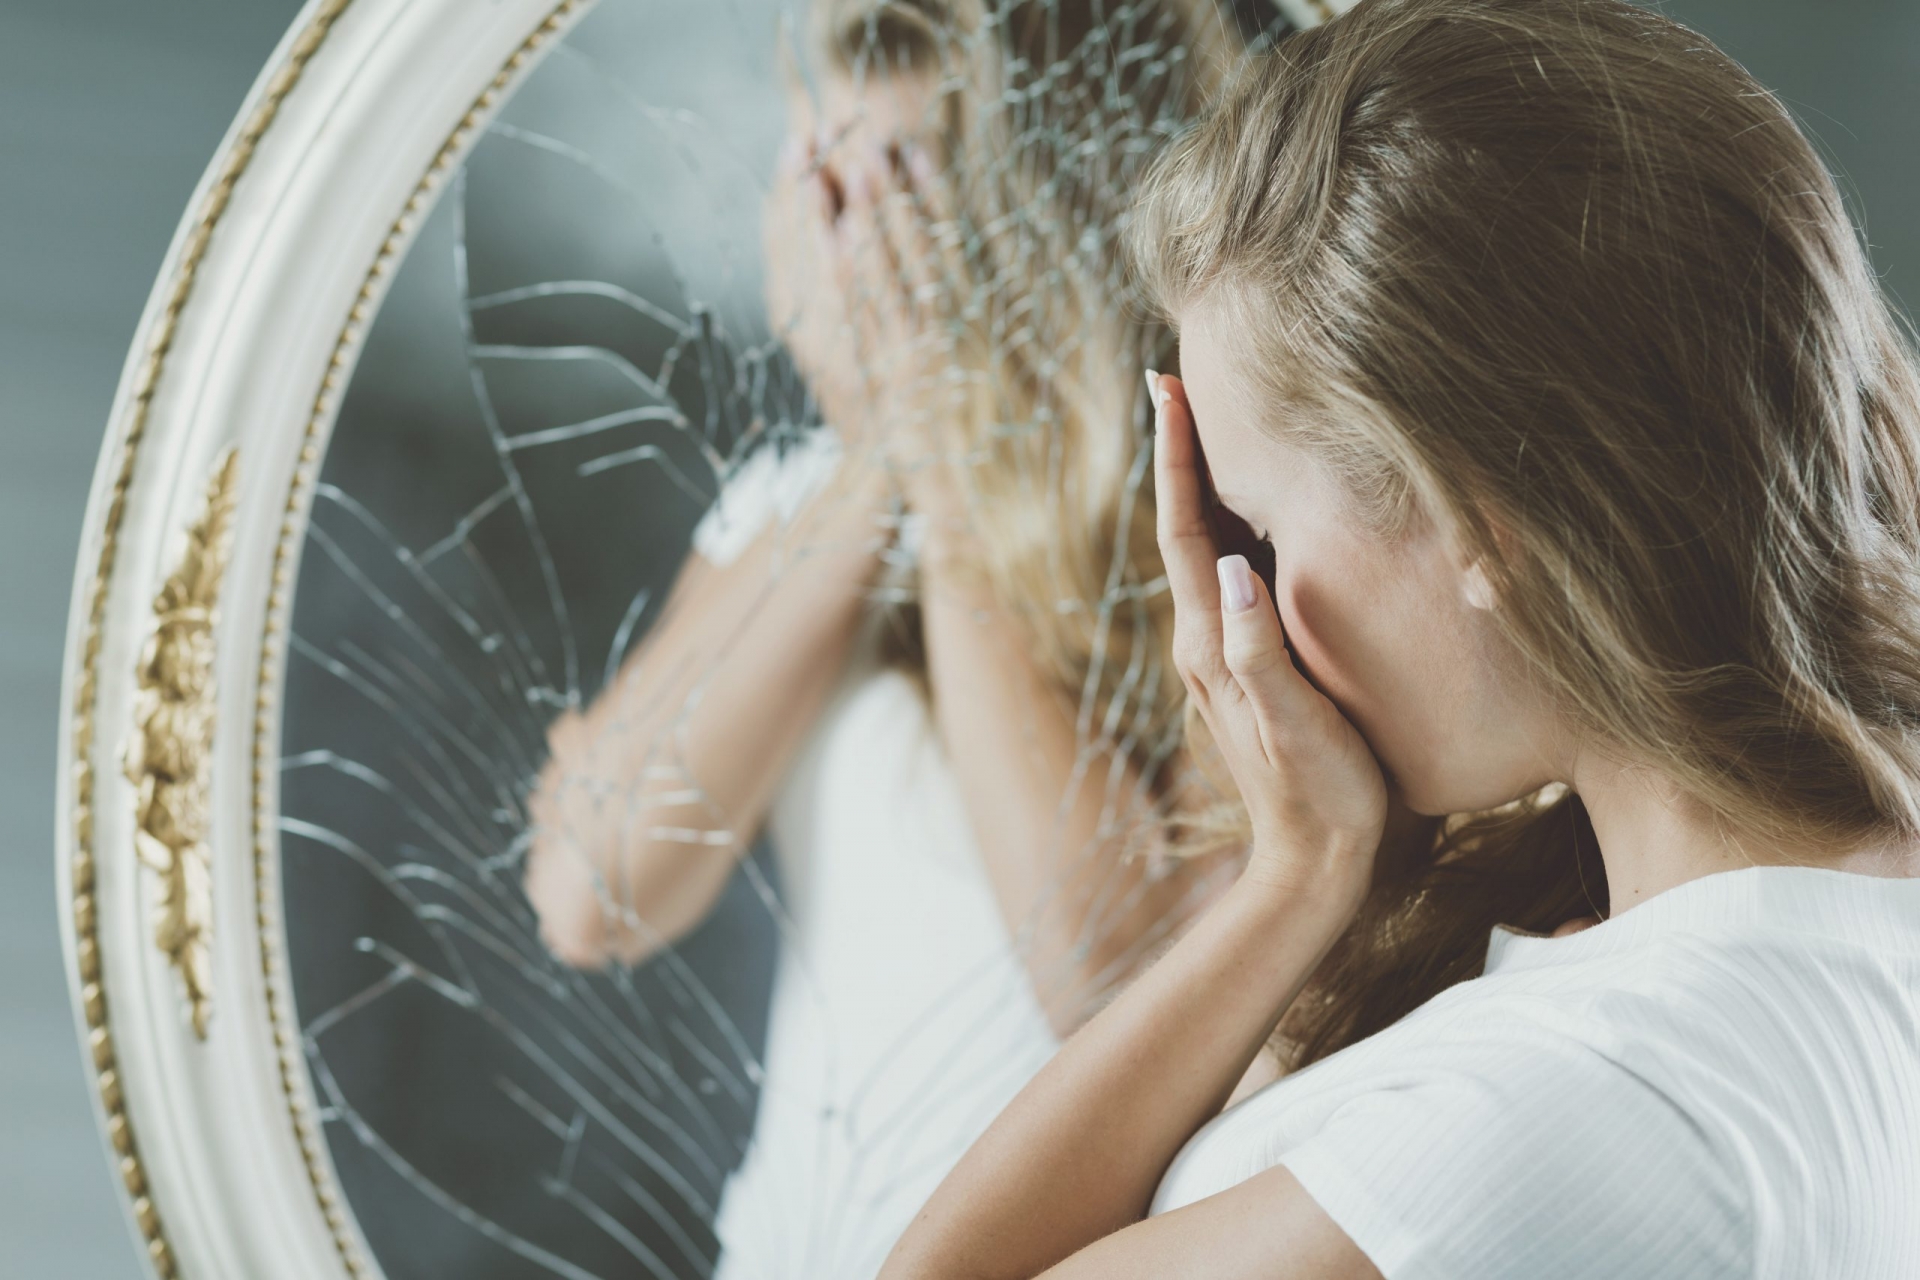 Một tấm gương bị mờ, nhòe, bụi bẩn cũng là điều kiêng kỵ, nếu bị nứt, vỡ thì càng tệ hơn nữa.